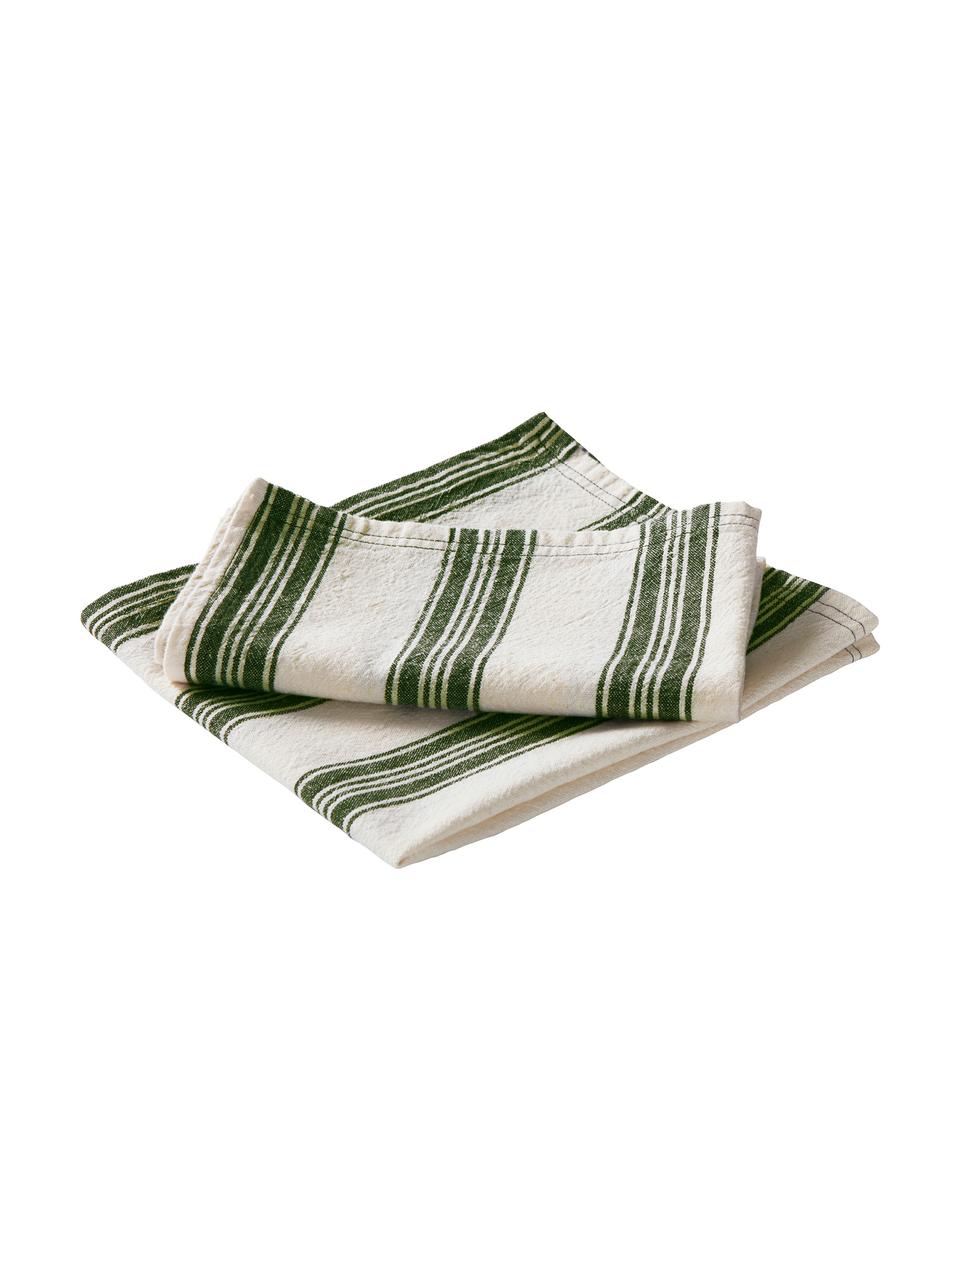 Stoff-Servietten Abigail aus Baumwolle/Leinen, 2 Stück, 80% Baumwolle
20% Leinen, Gebrochenes Weiß, Grün, 45 x 45 cm